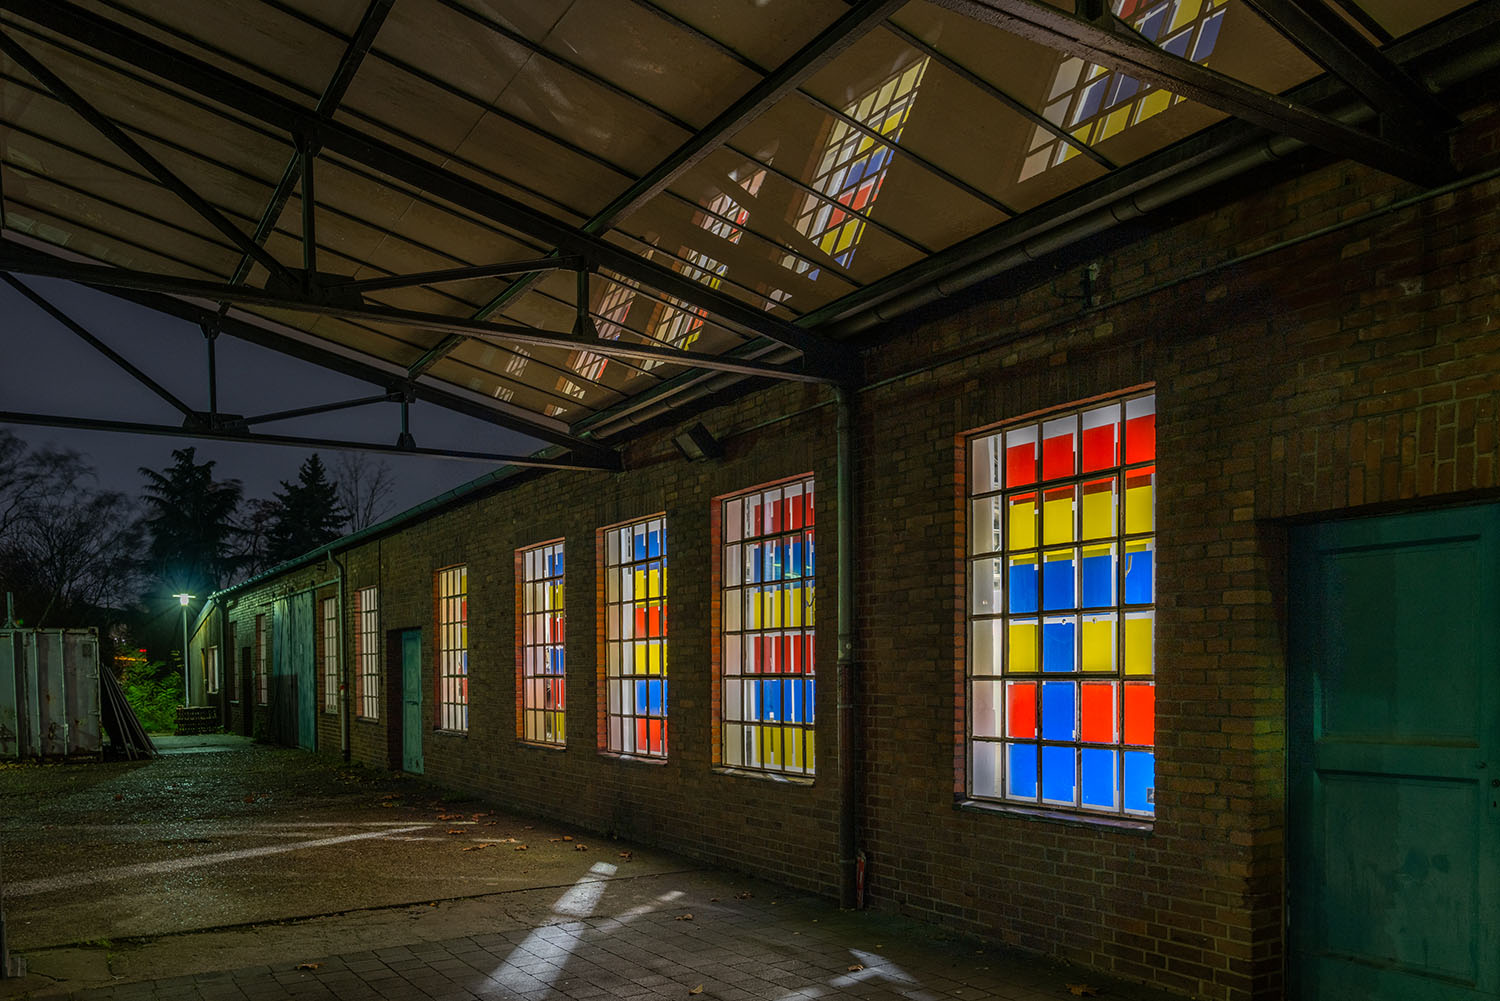 Farb  Licht  Spiel - Installation von Nikola Dimitrov & Norbert Thomas im Verein für aktuelle Kunst / Ruhrgebiet, Oberhausen